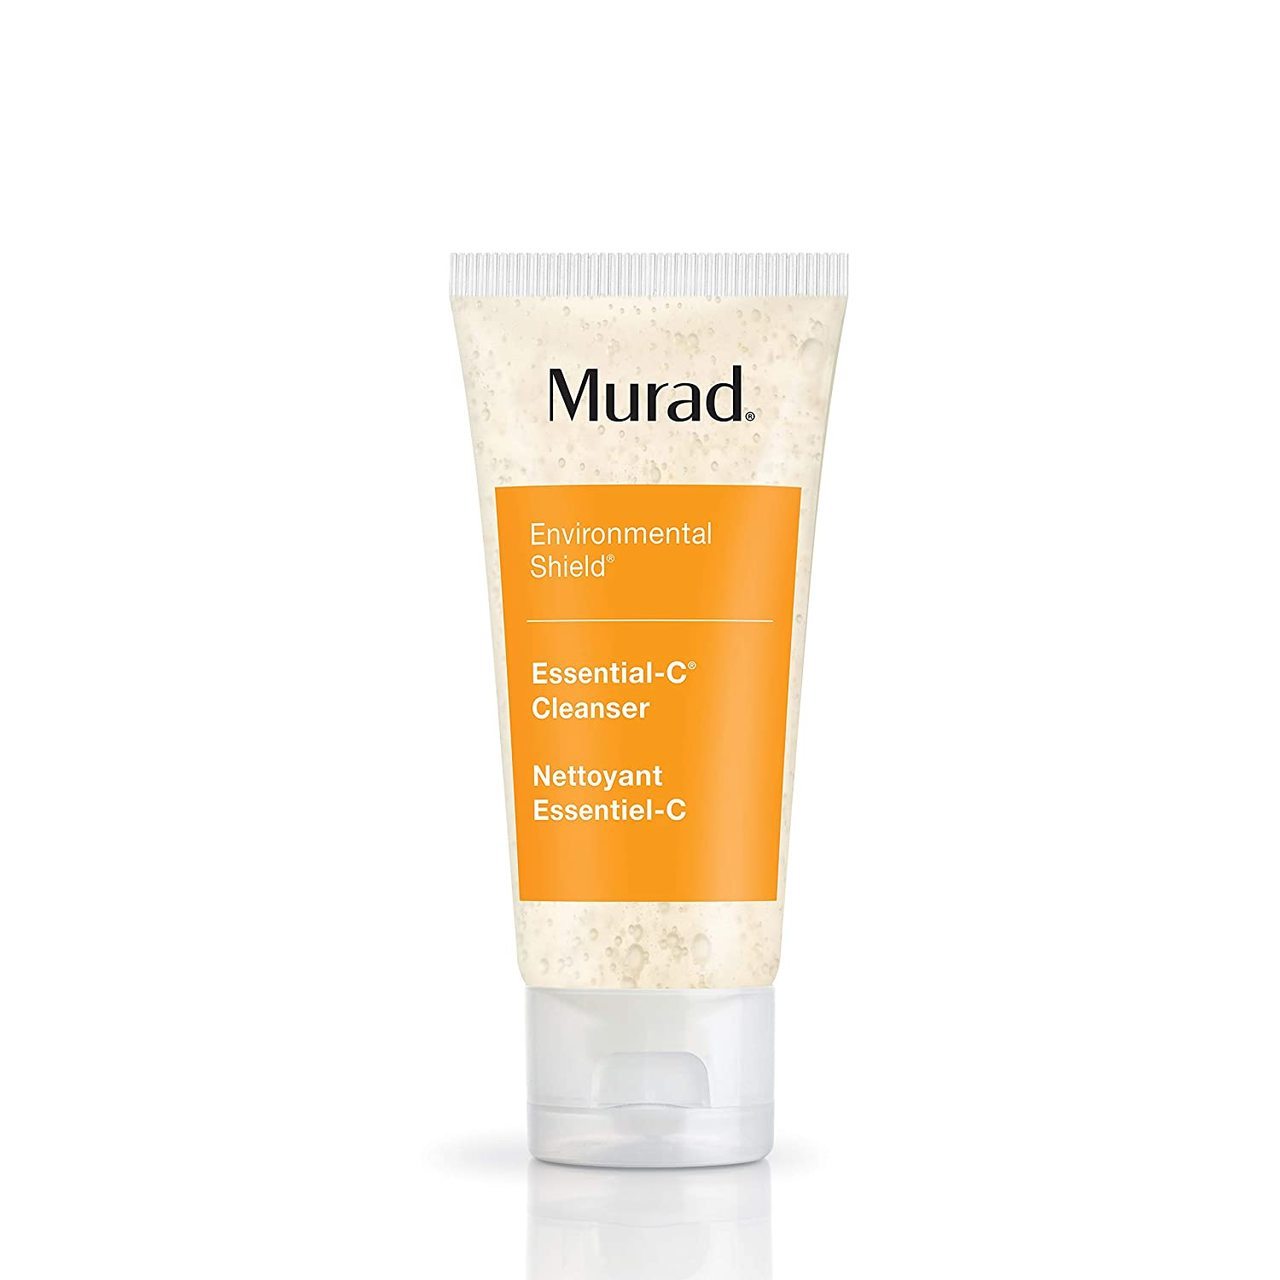 Murad Essential-C Cleanser 2.0oz - $23.92